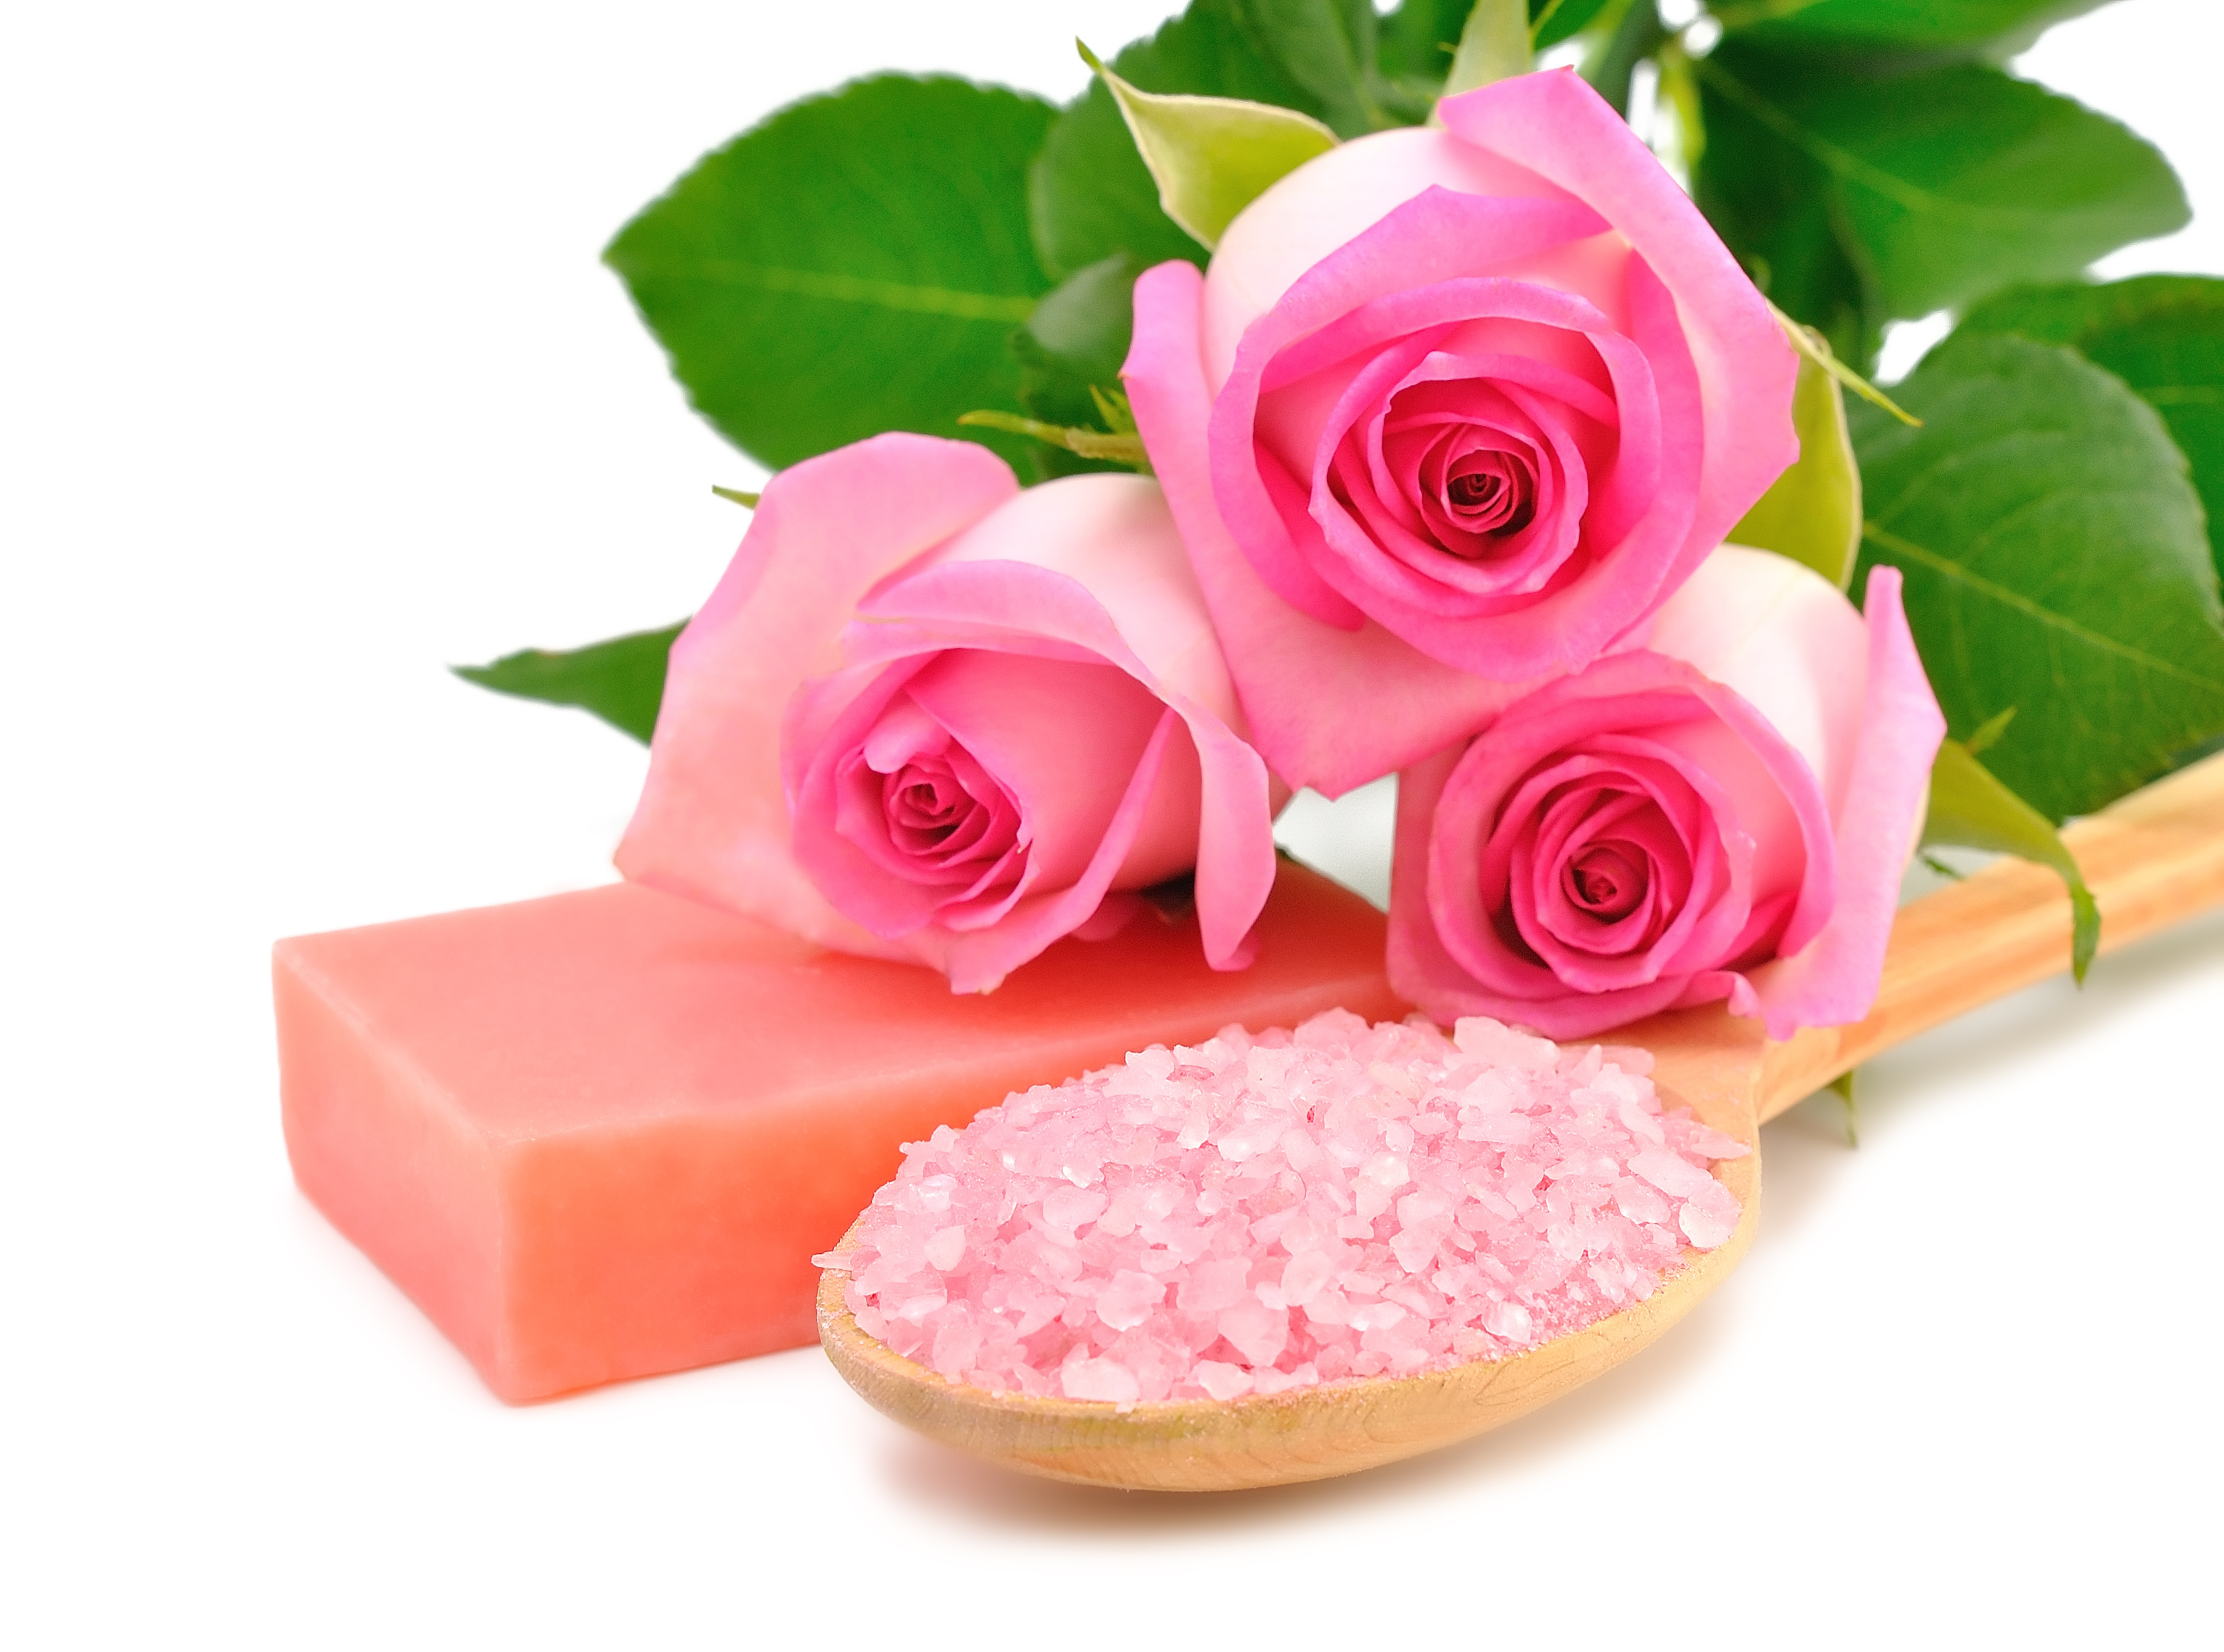 Spa Soap Flower Rose Pink Flower 3347x2486